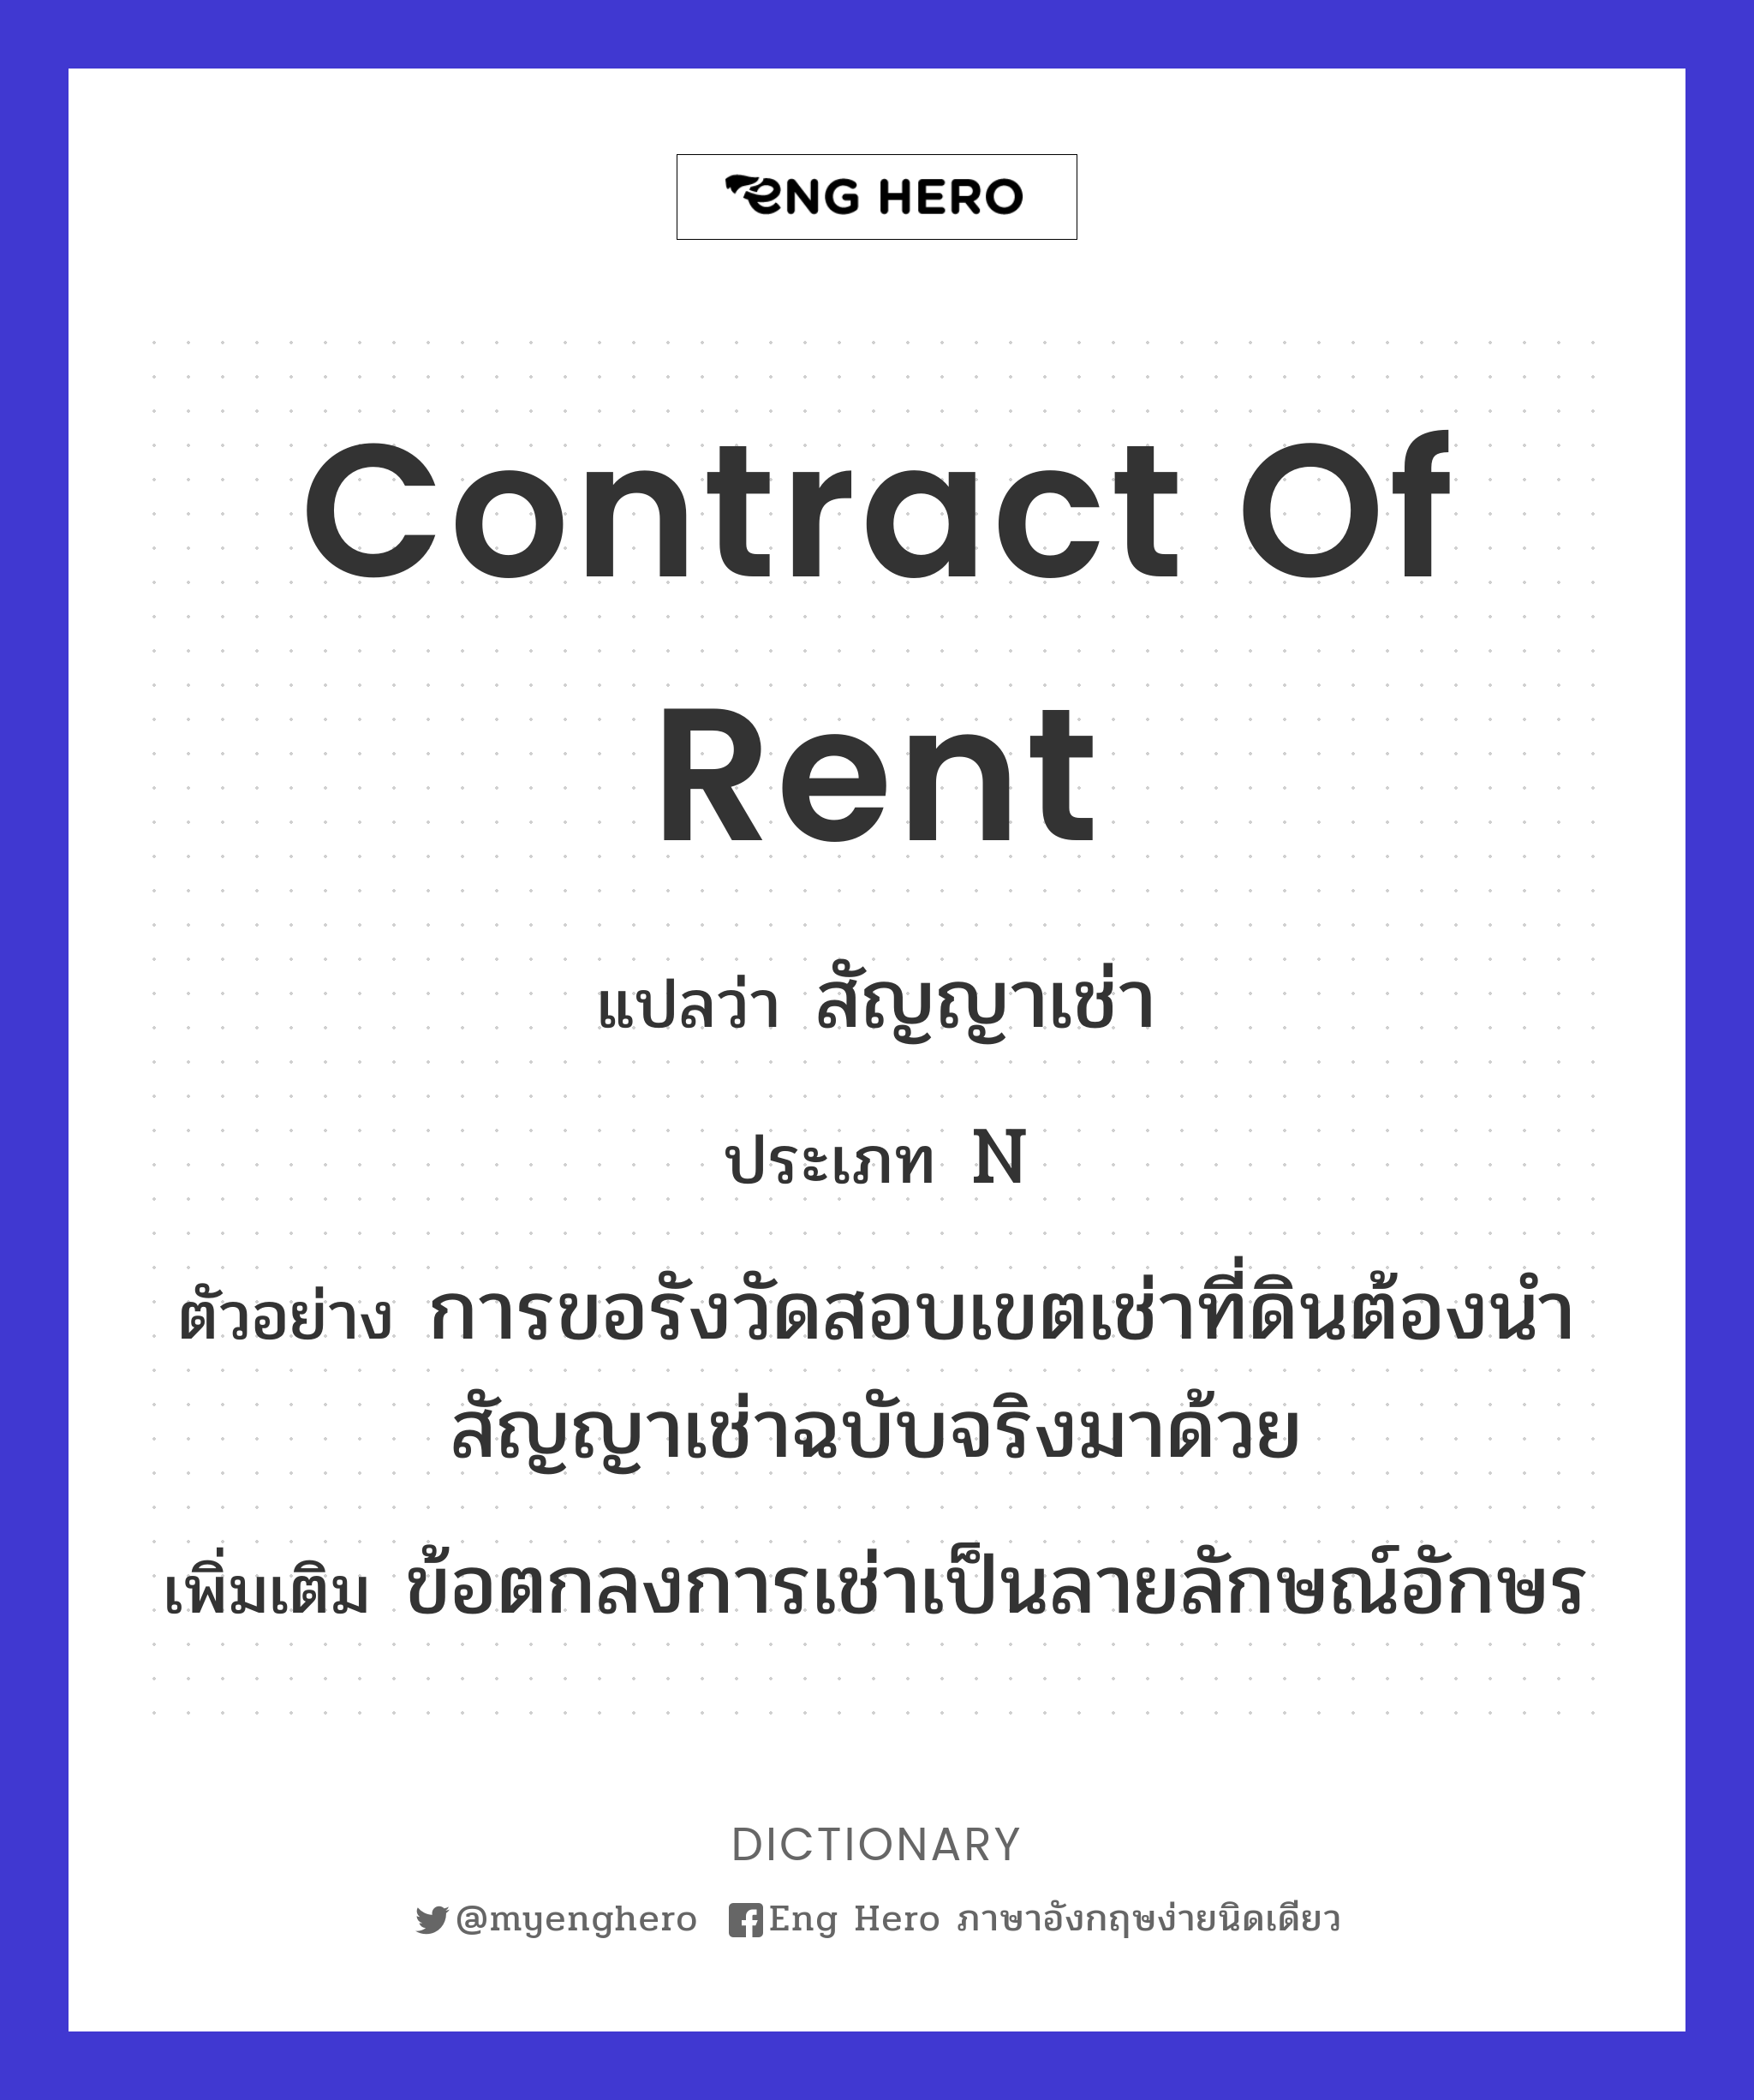 Contract Of Rent แปลว่า สัญญาเช่า | Eng Hero เรียนภาษาอังกฤษ ออนไลน์ ฟรี